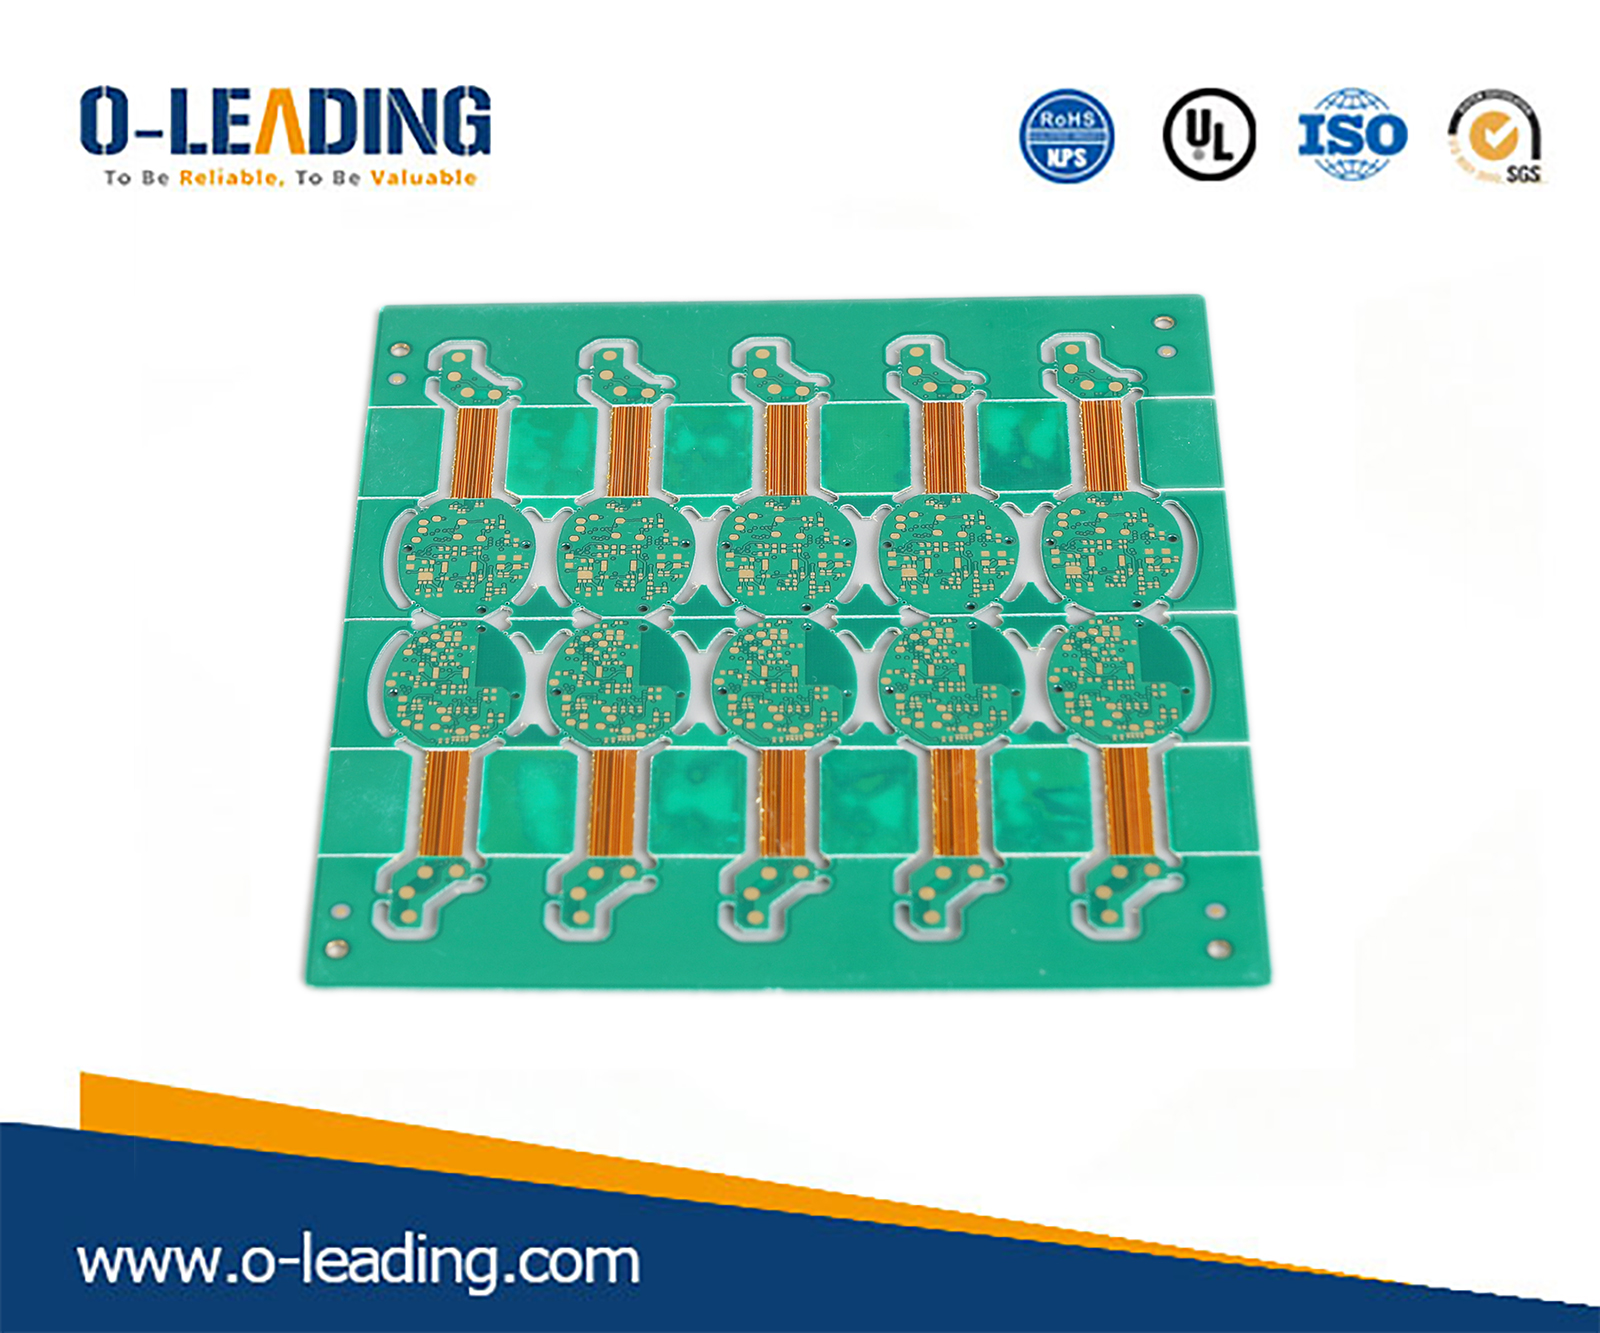 Usine de circuits imprimés rigide et flexible, Chine Fabricant de circuits imprimés rigide et flexible, fabricant de circuit imprimé Chine